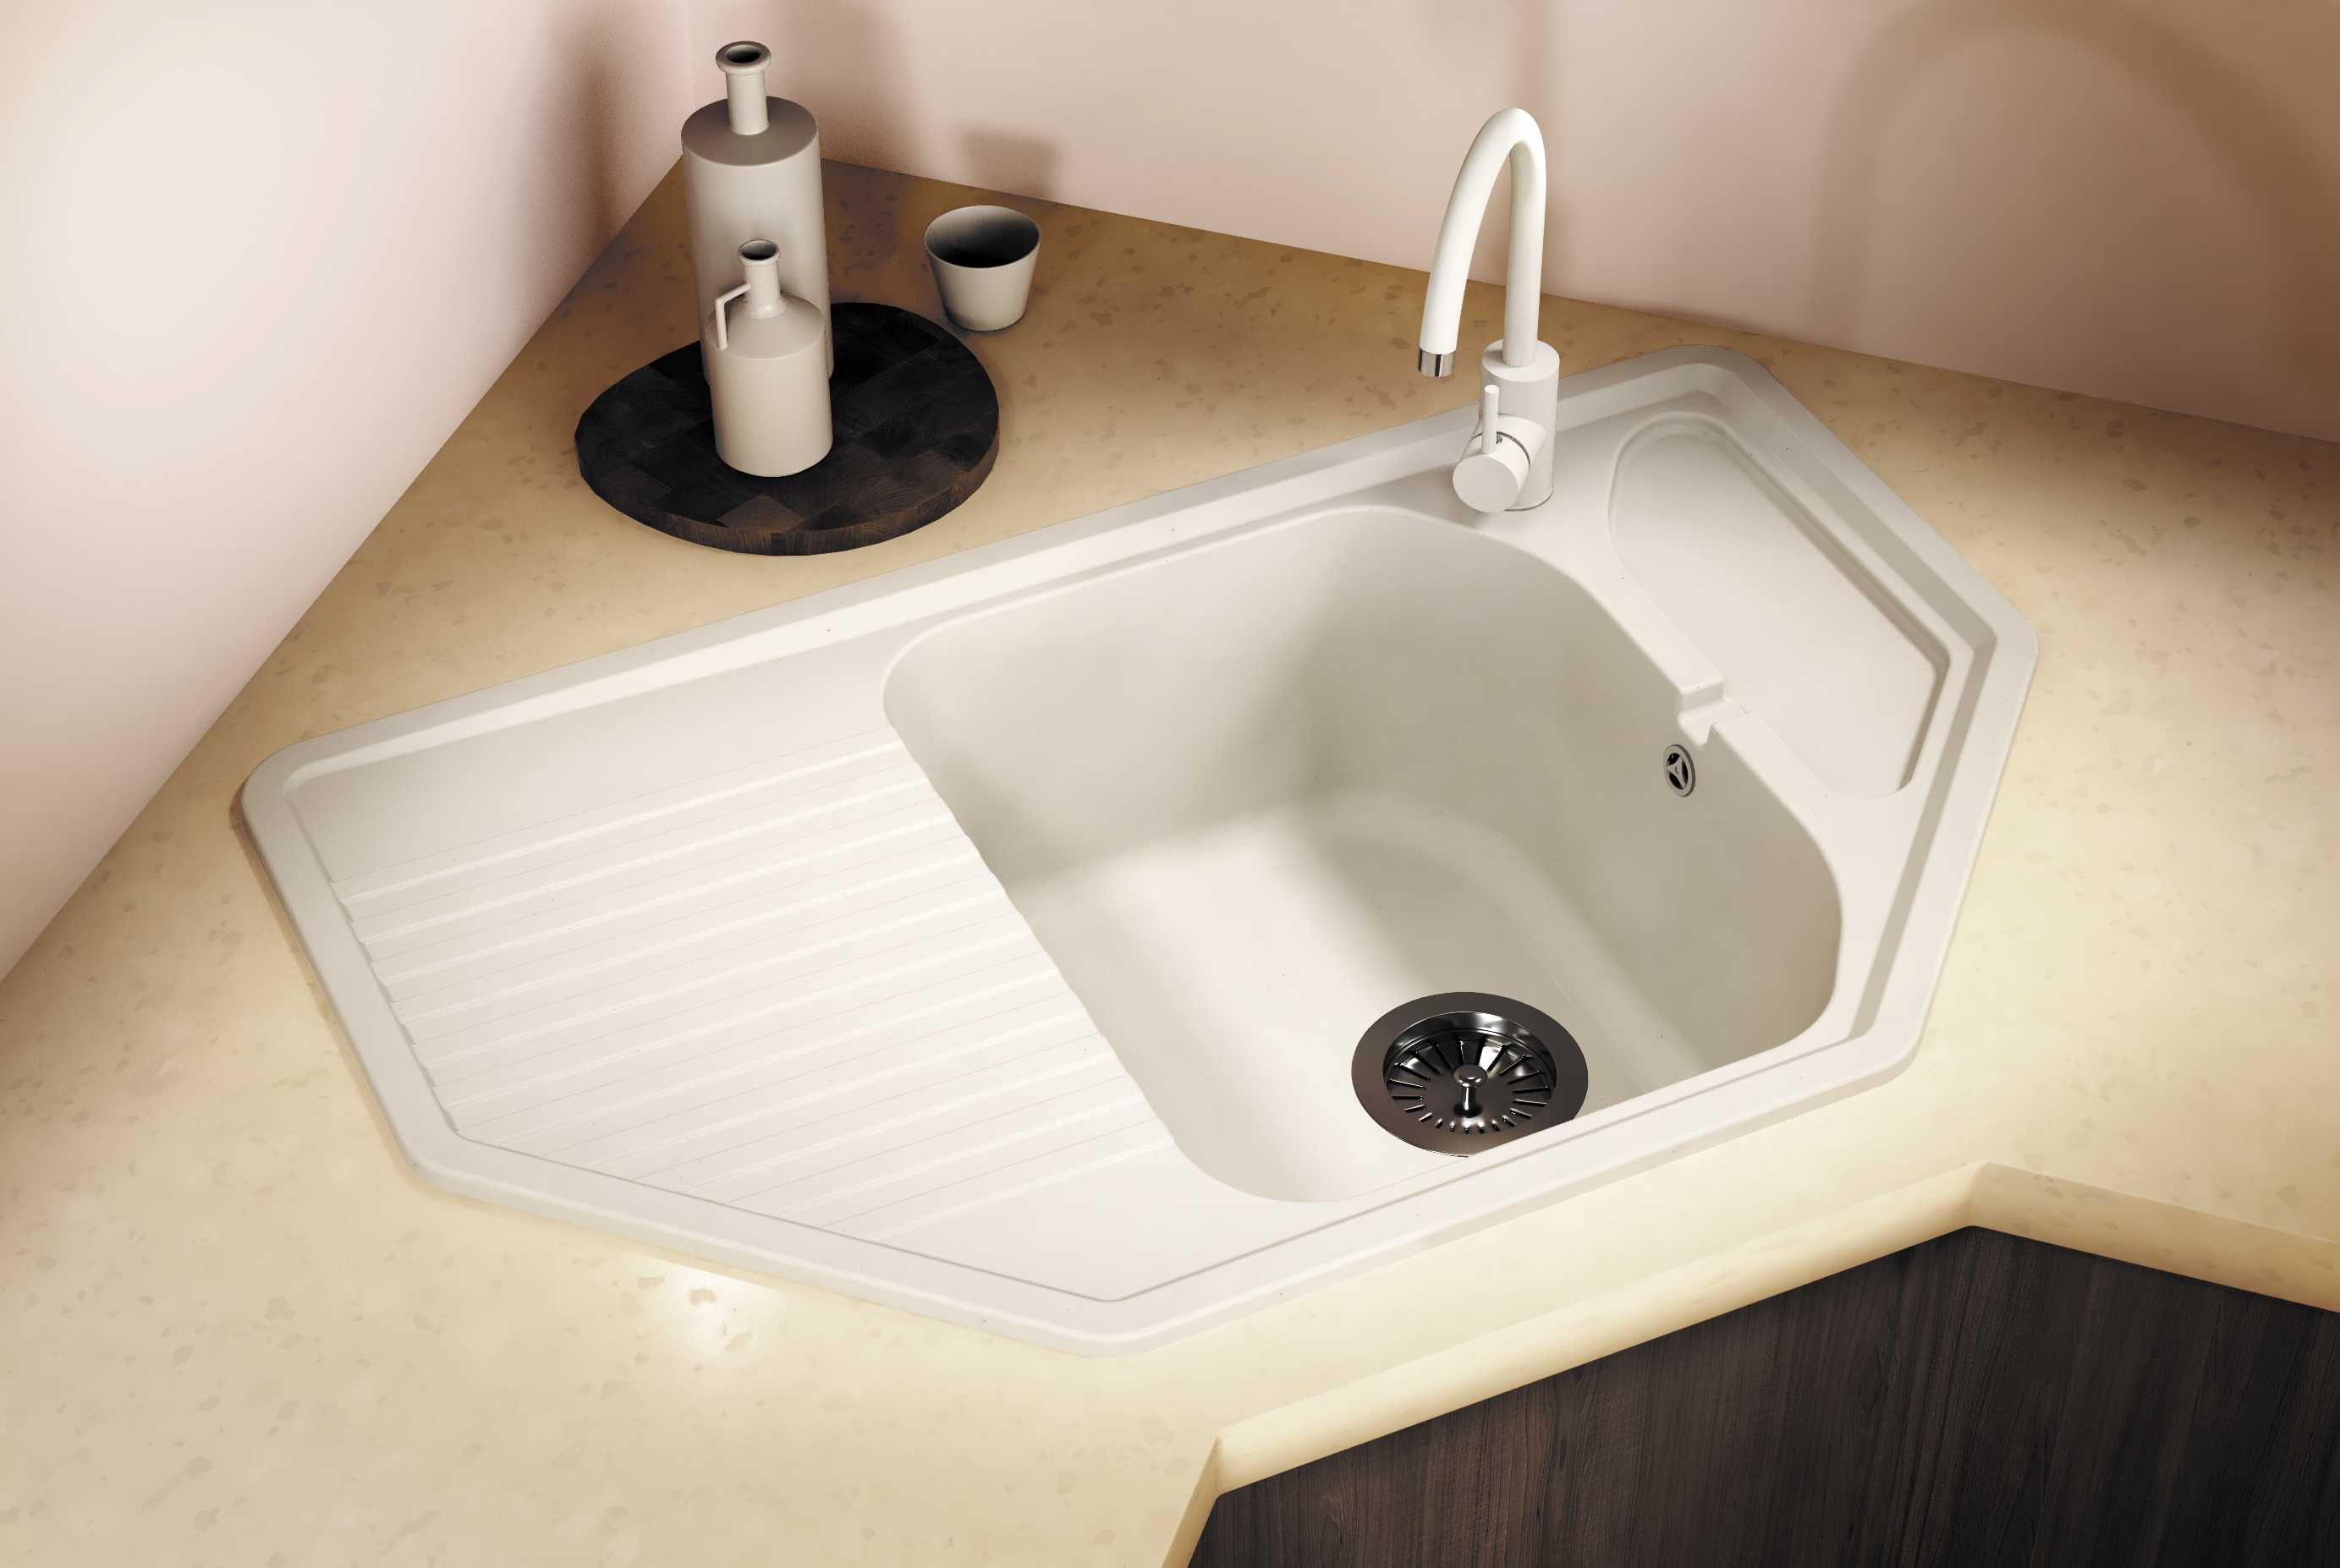 Раковина в ванной комнате – ключевой элемент интерьера, ведь именно ее используют чаще всего Чтобы процесс мытья проходил веселее, итальянские дизайнеры